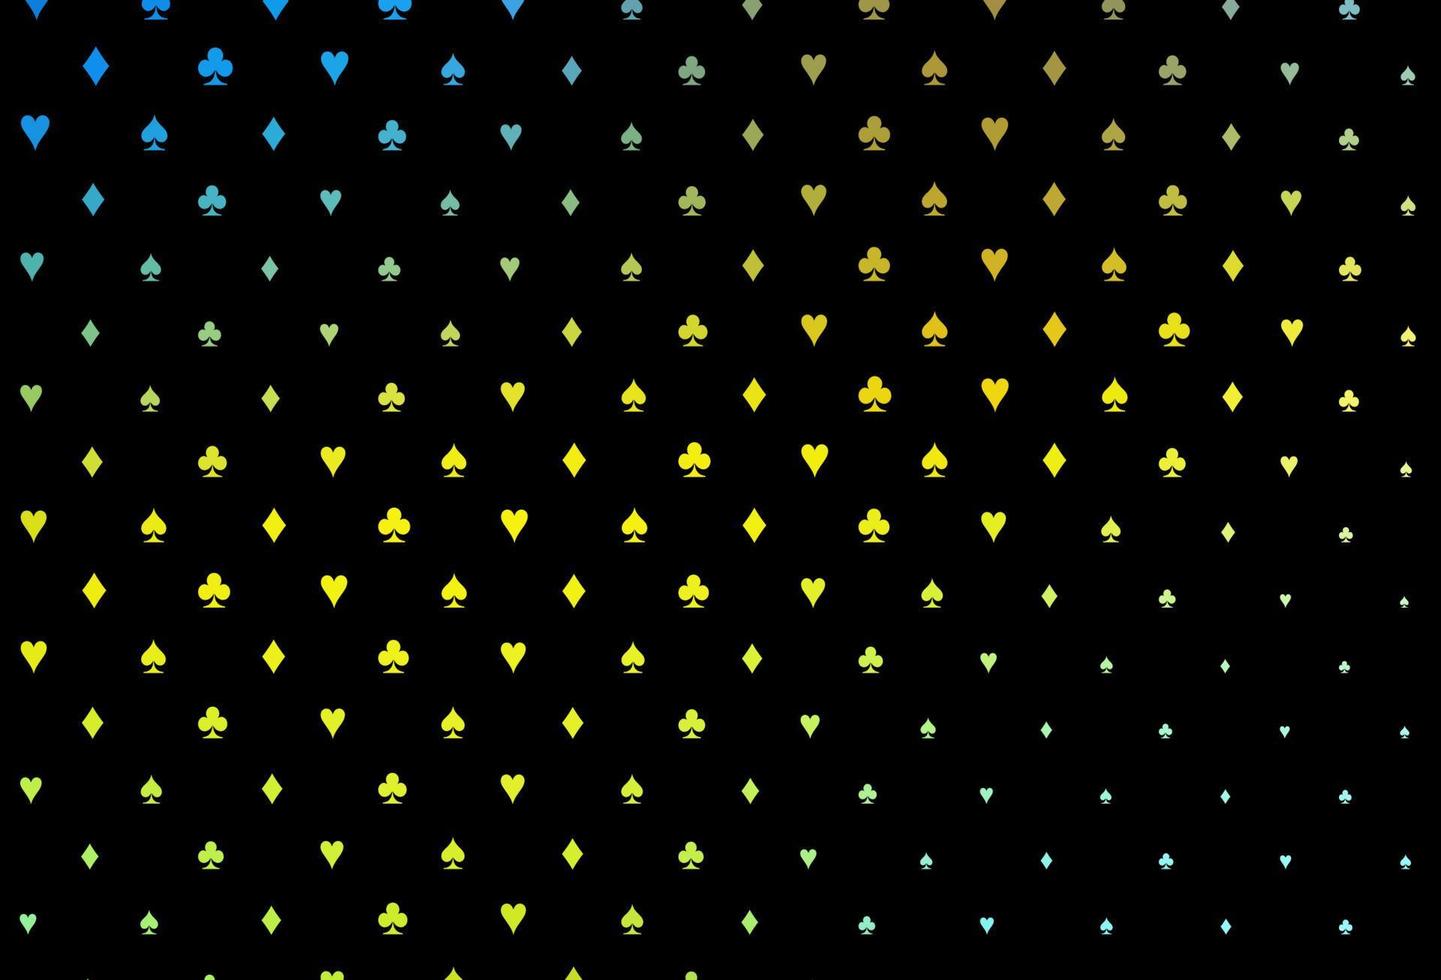 capa de vetor azul e amarelo escuro com símbolos de aposta.